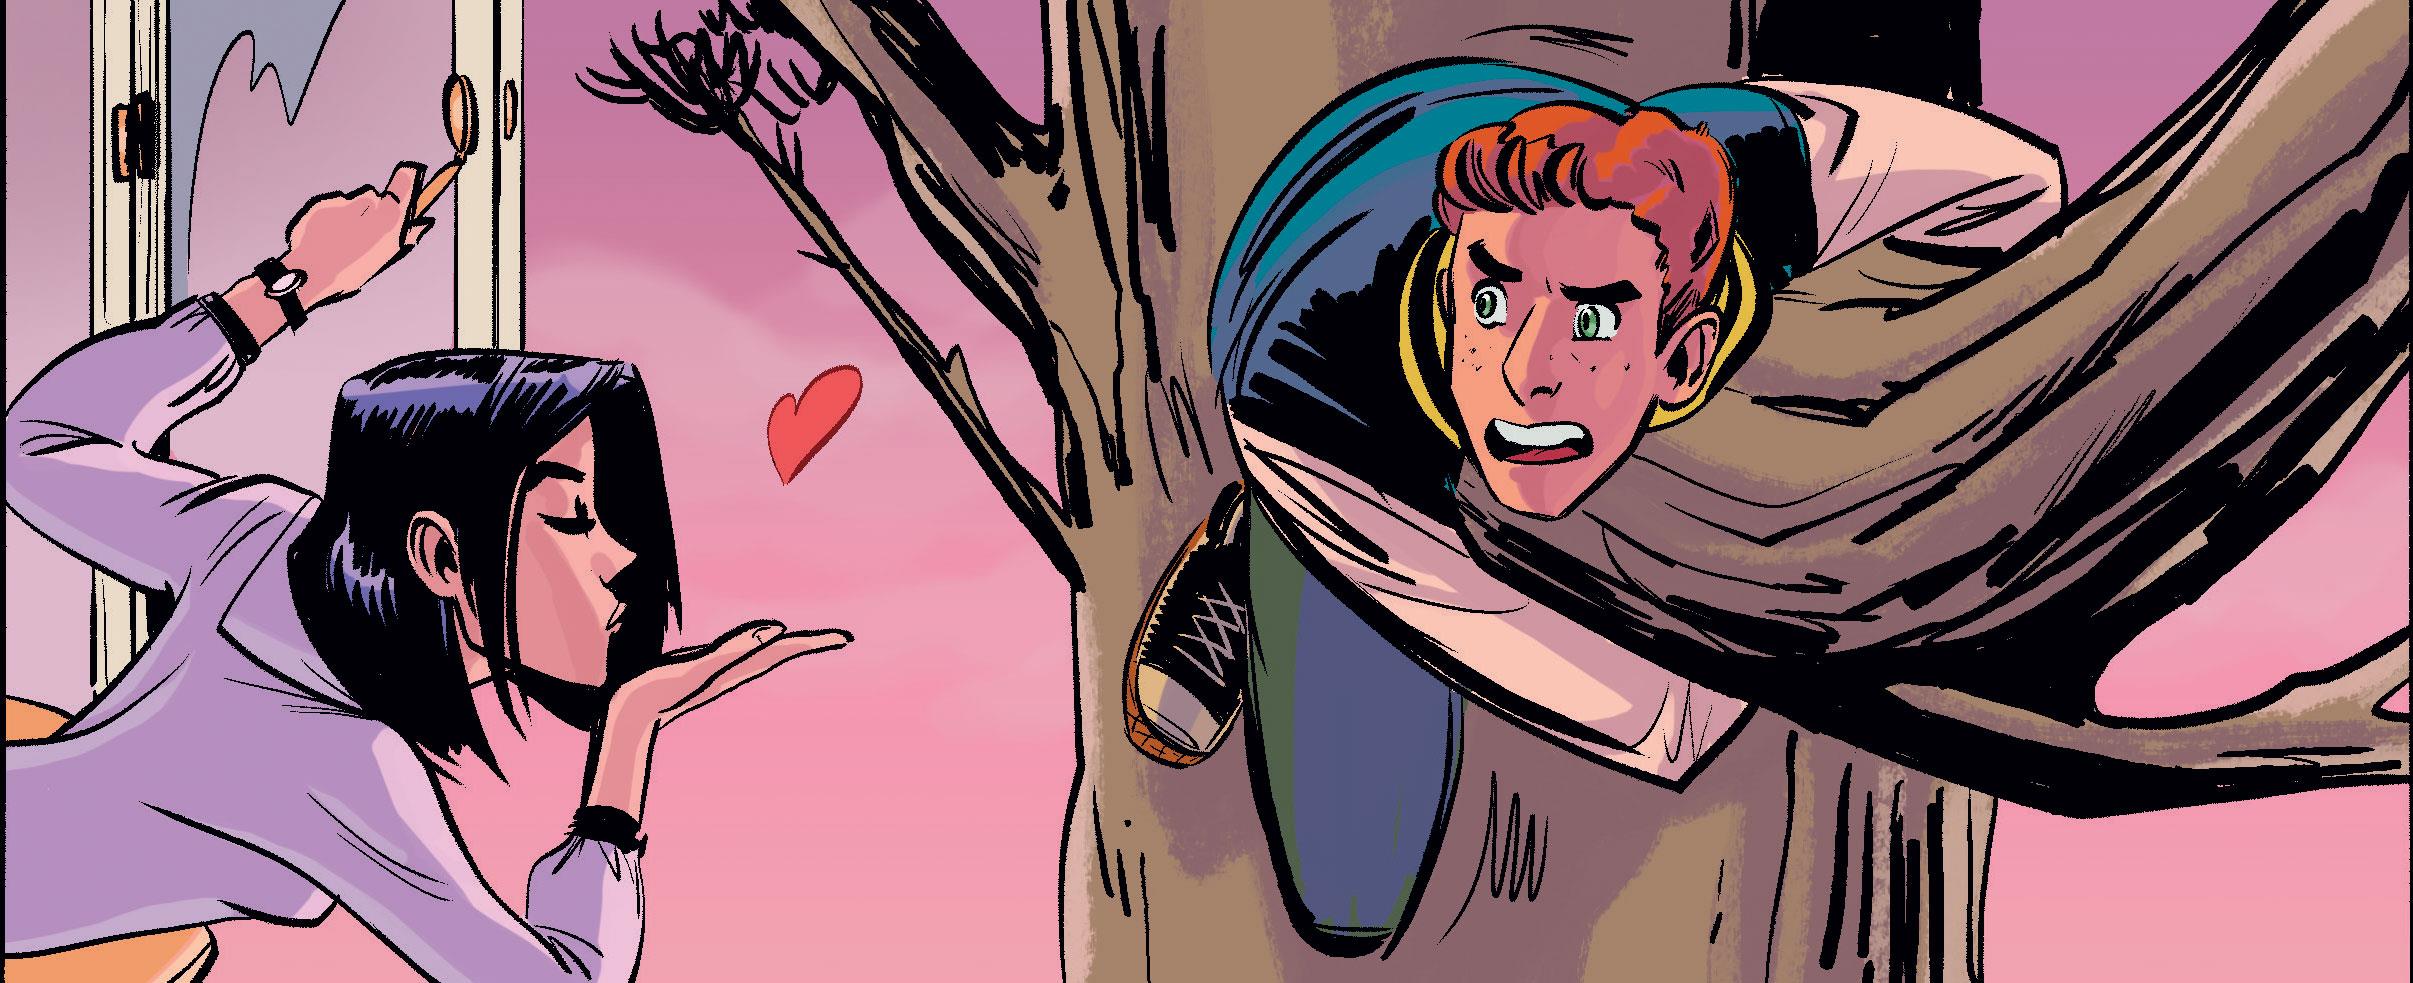 Veronica lancia un bacio ad Archie, appeso ad un albero